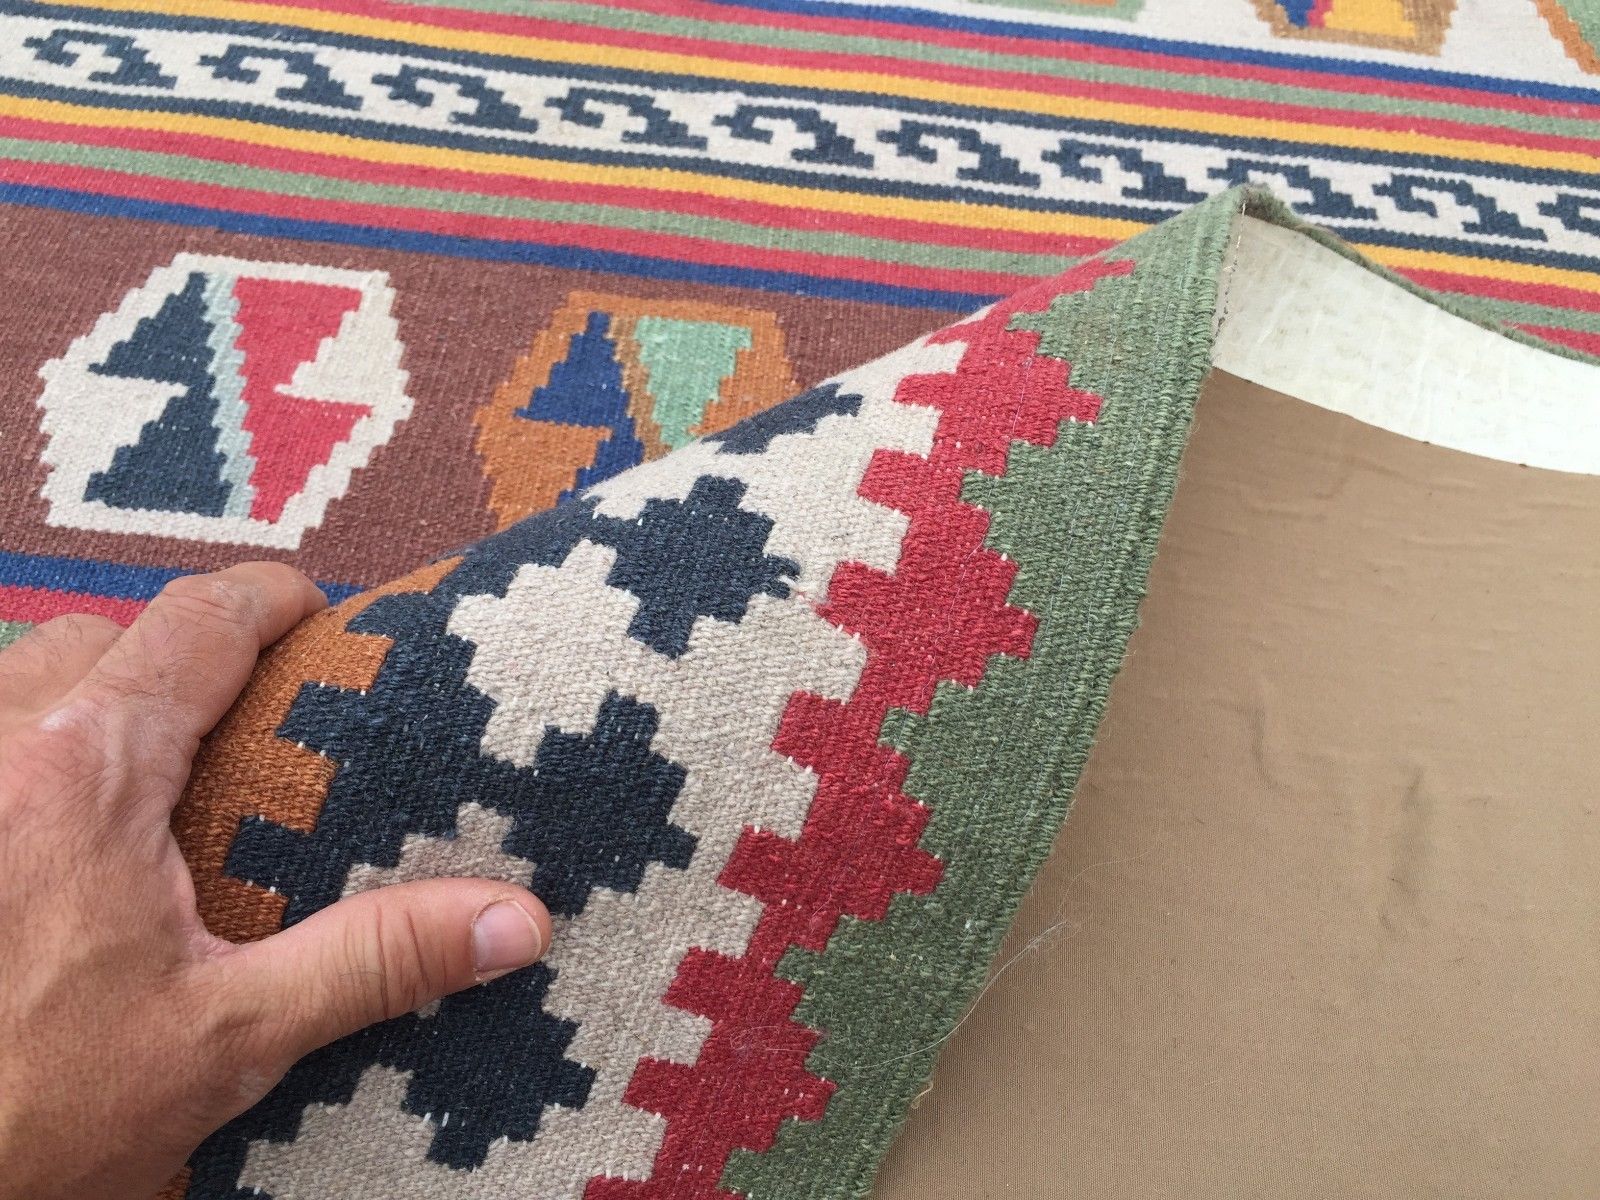 Tribal Persian Kilim, kelim, country house boho vintage rustic rug, 320x157cm Antiques:Carpets & Rugs kilimshop.myshopify.com